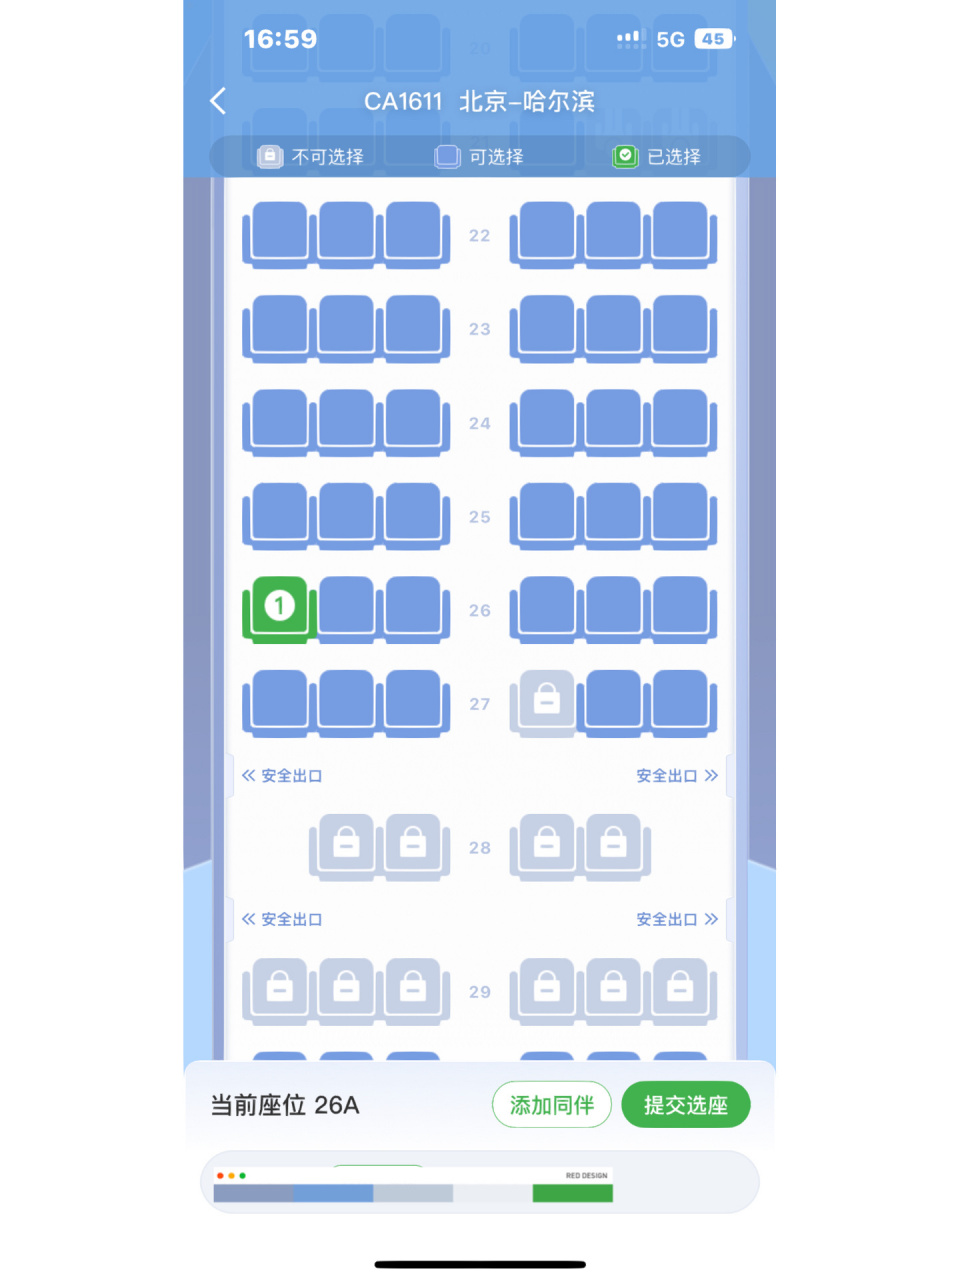 东航A321机型座位图图片